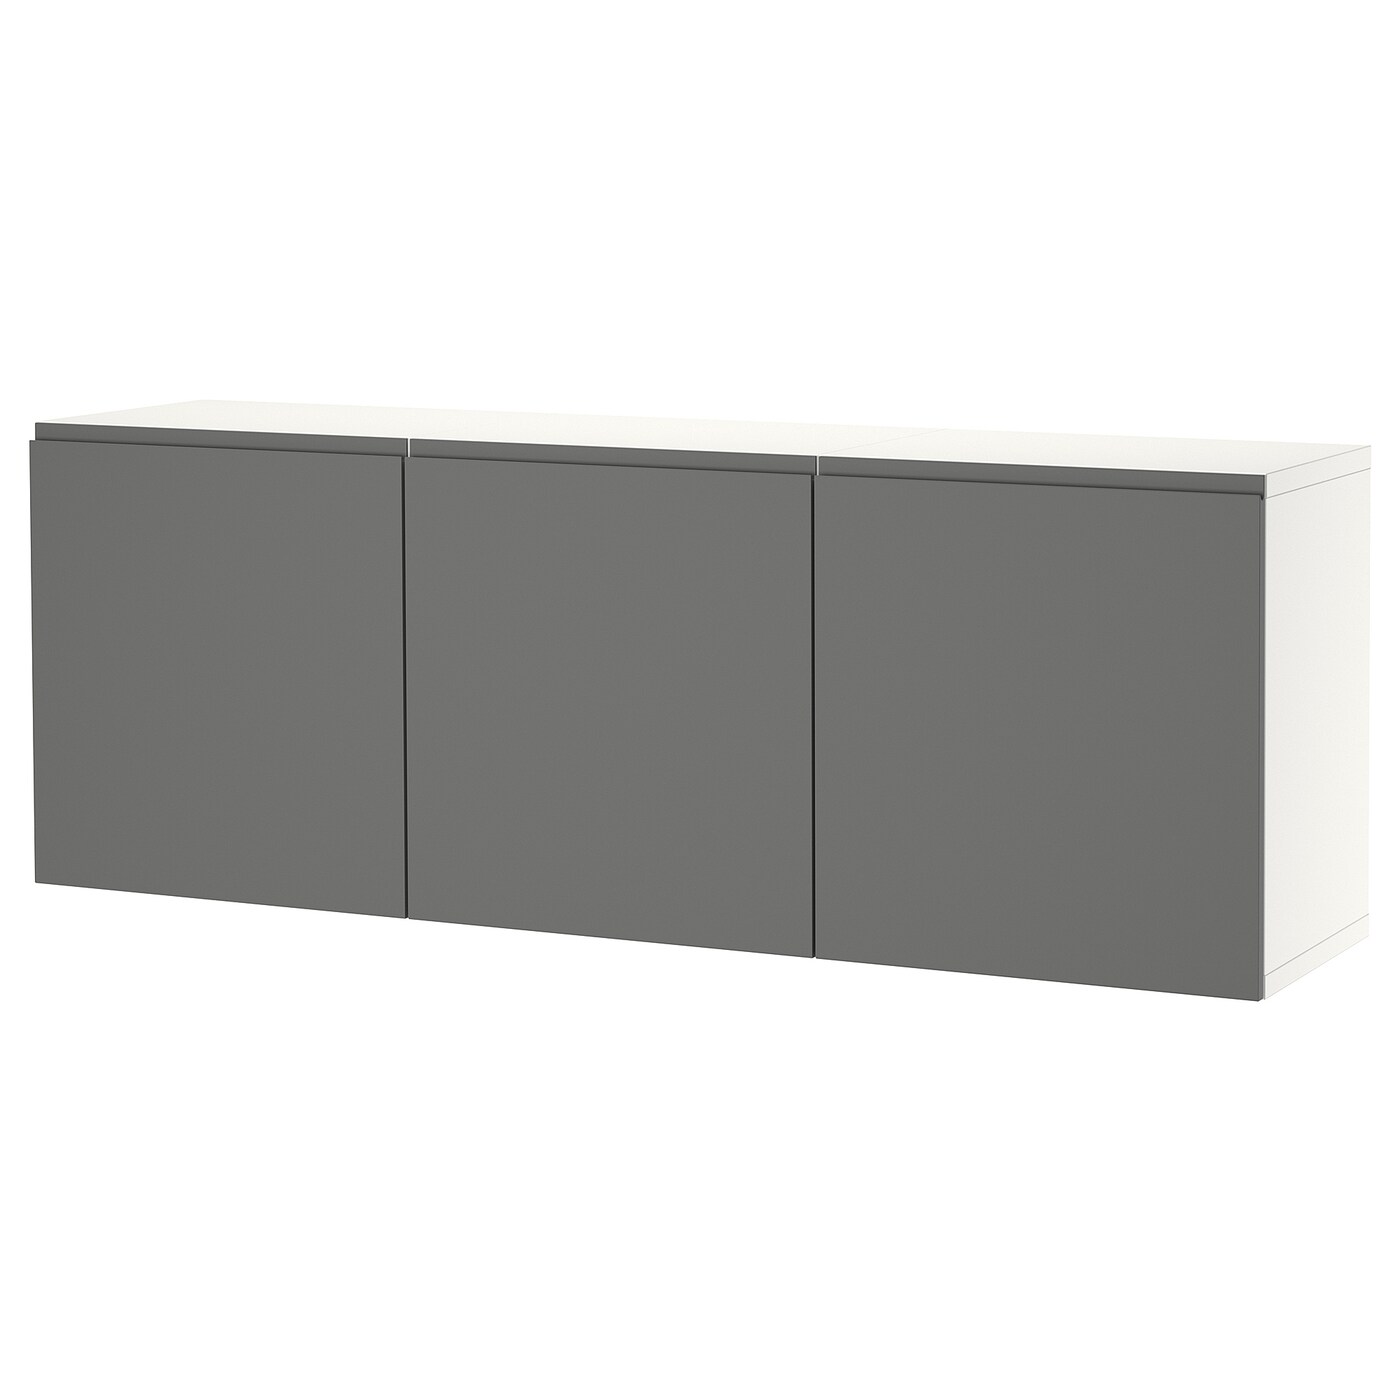 Навесной шкаф - IKEA BESTÅ/BESTA, 180x42x64 см, серый, БЕСТО ИКЕА